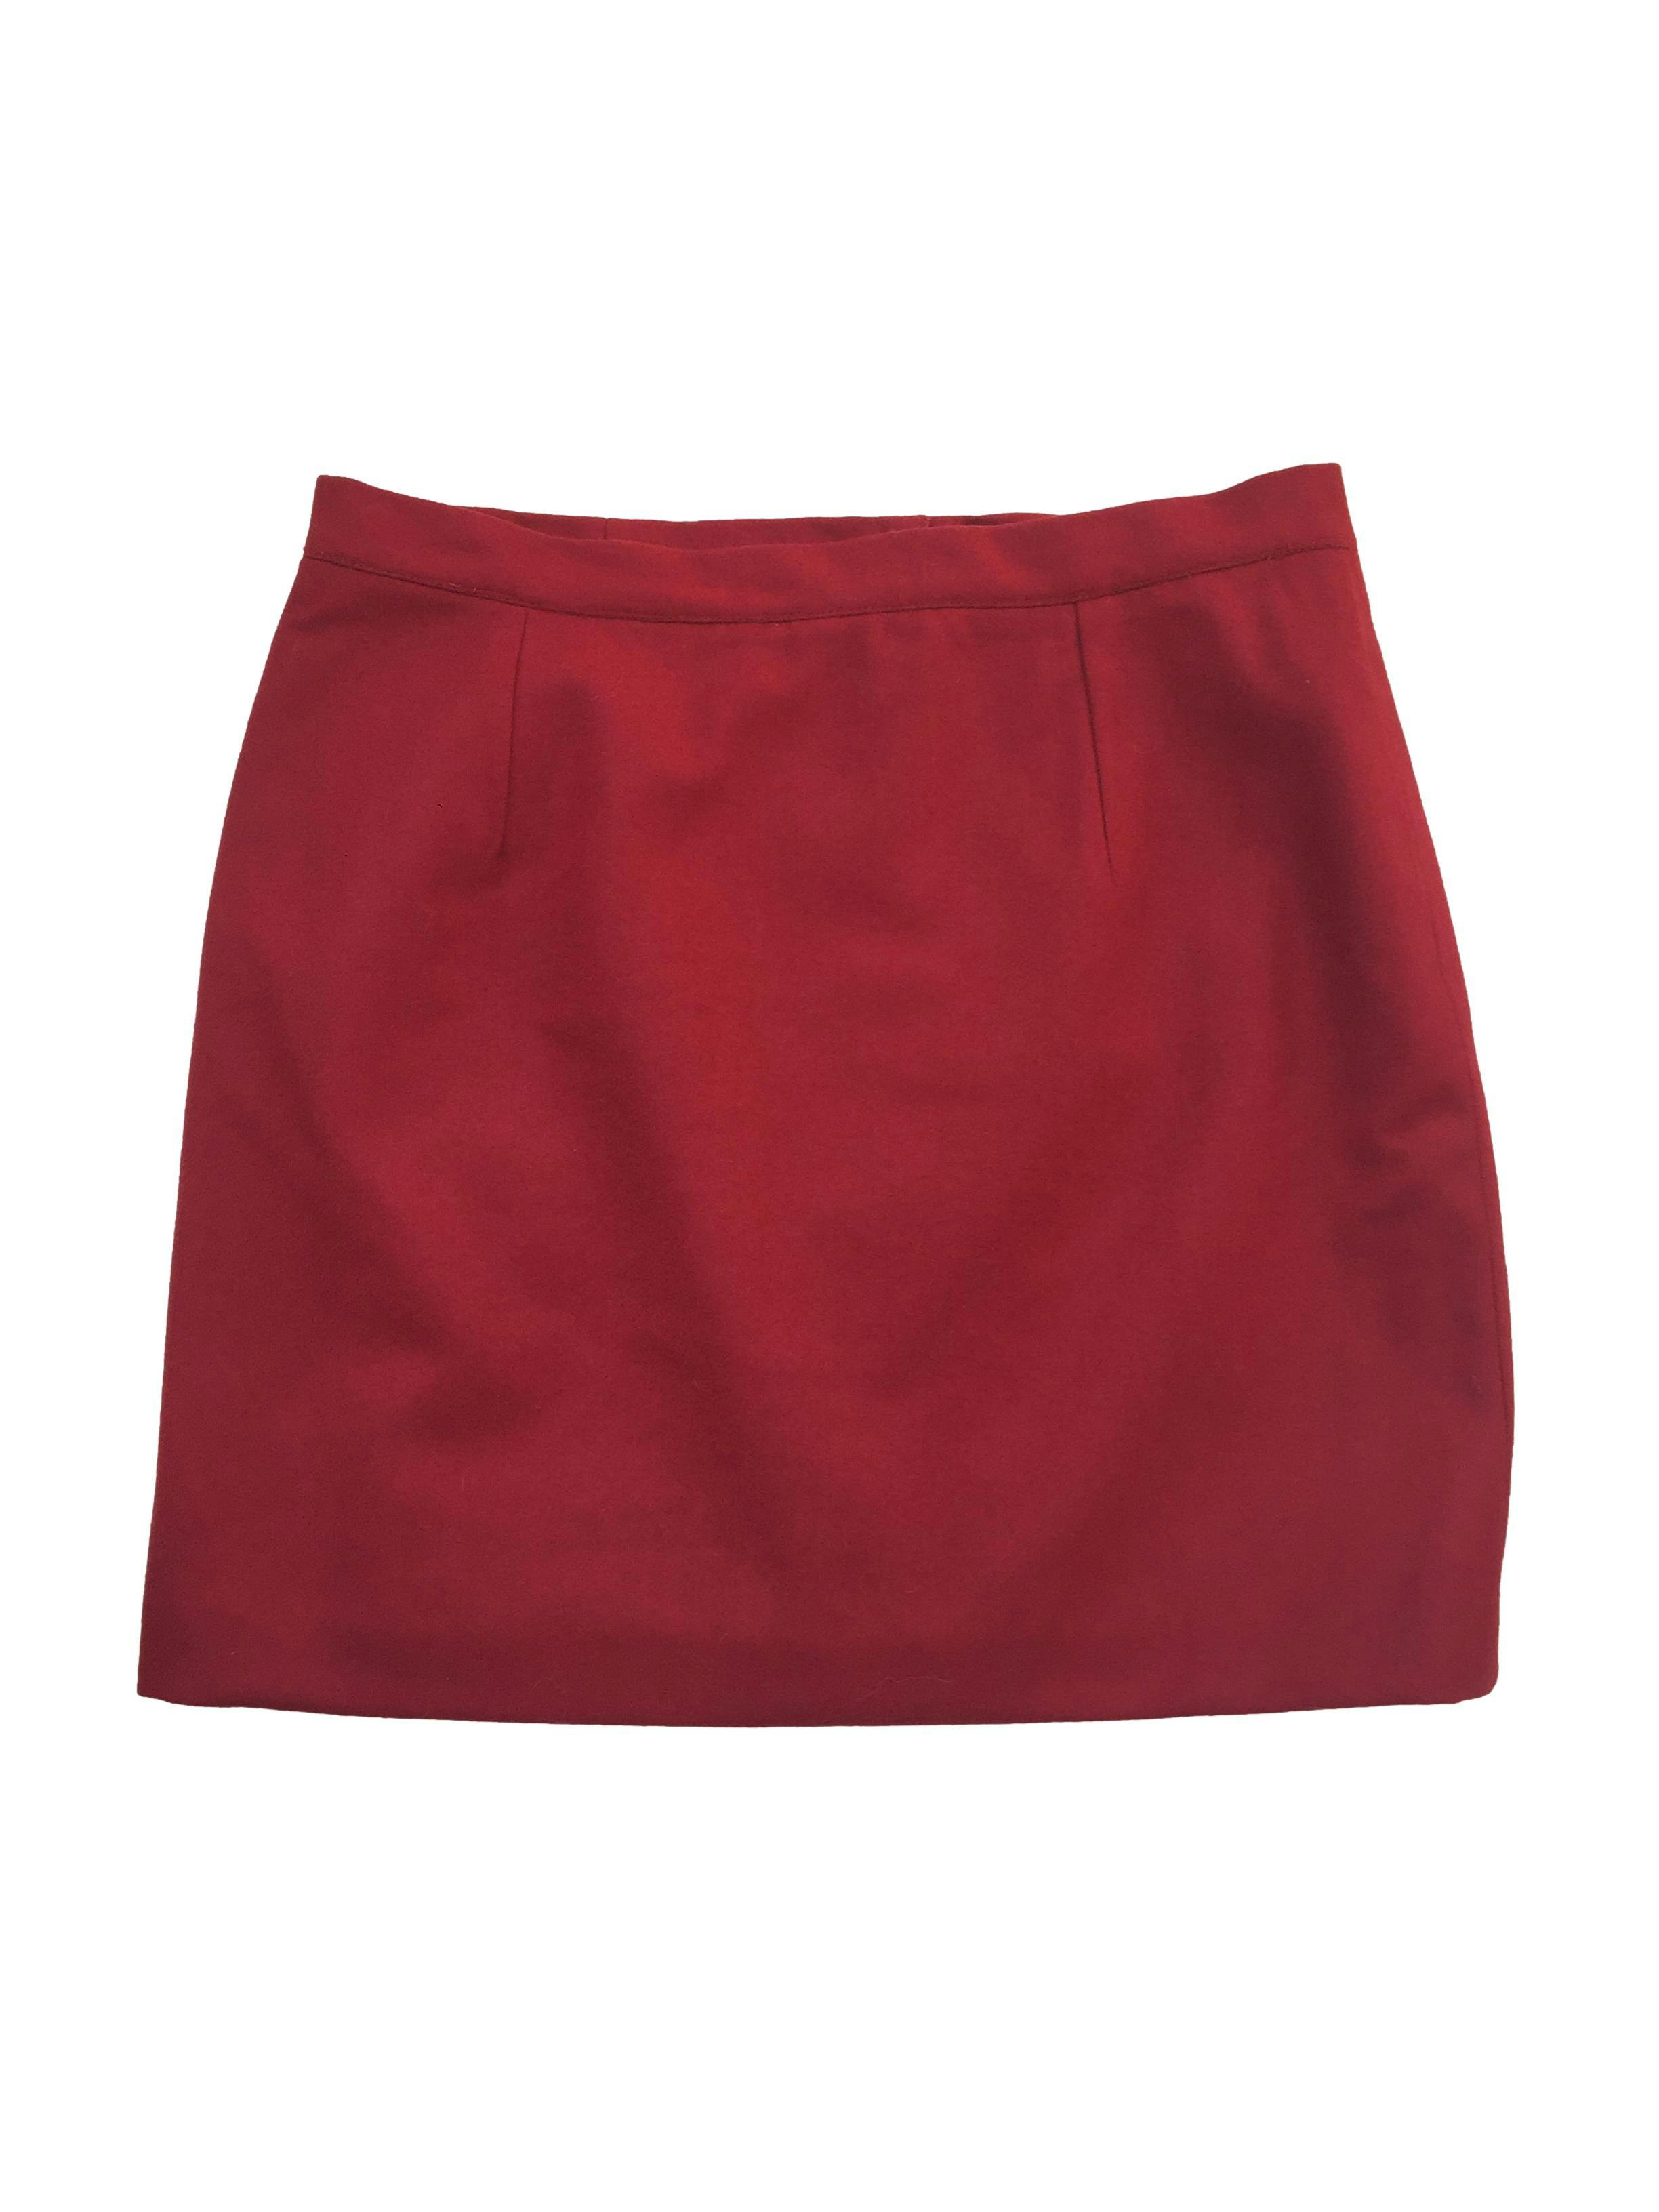 Falda mini de paño color rojo, tiene pinzas, forro y cierre posterior. Cintura 80cm, Largo 45cm.